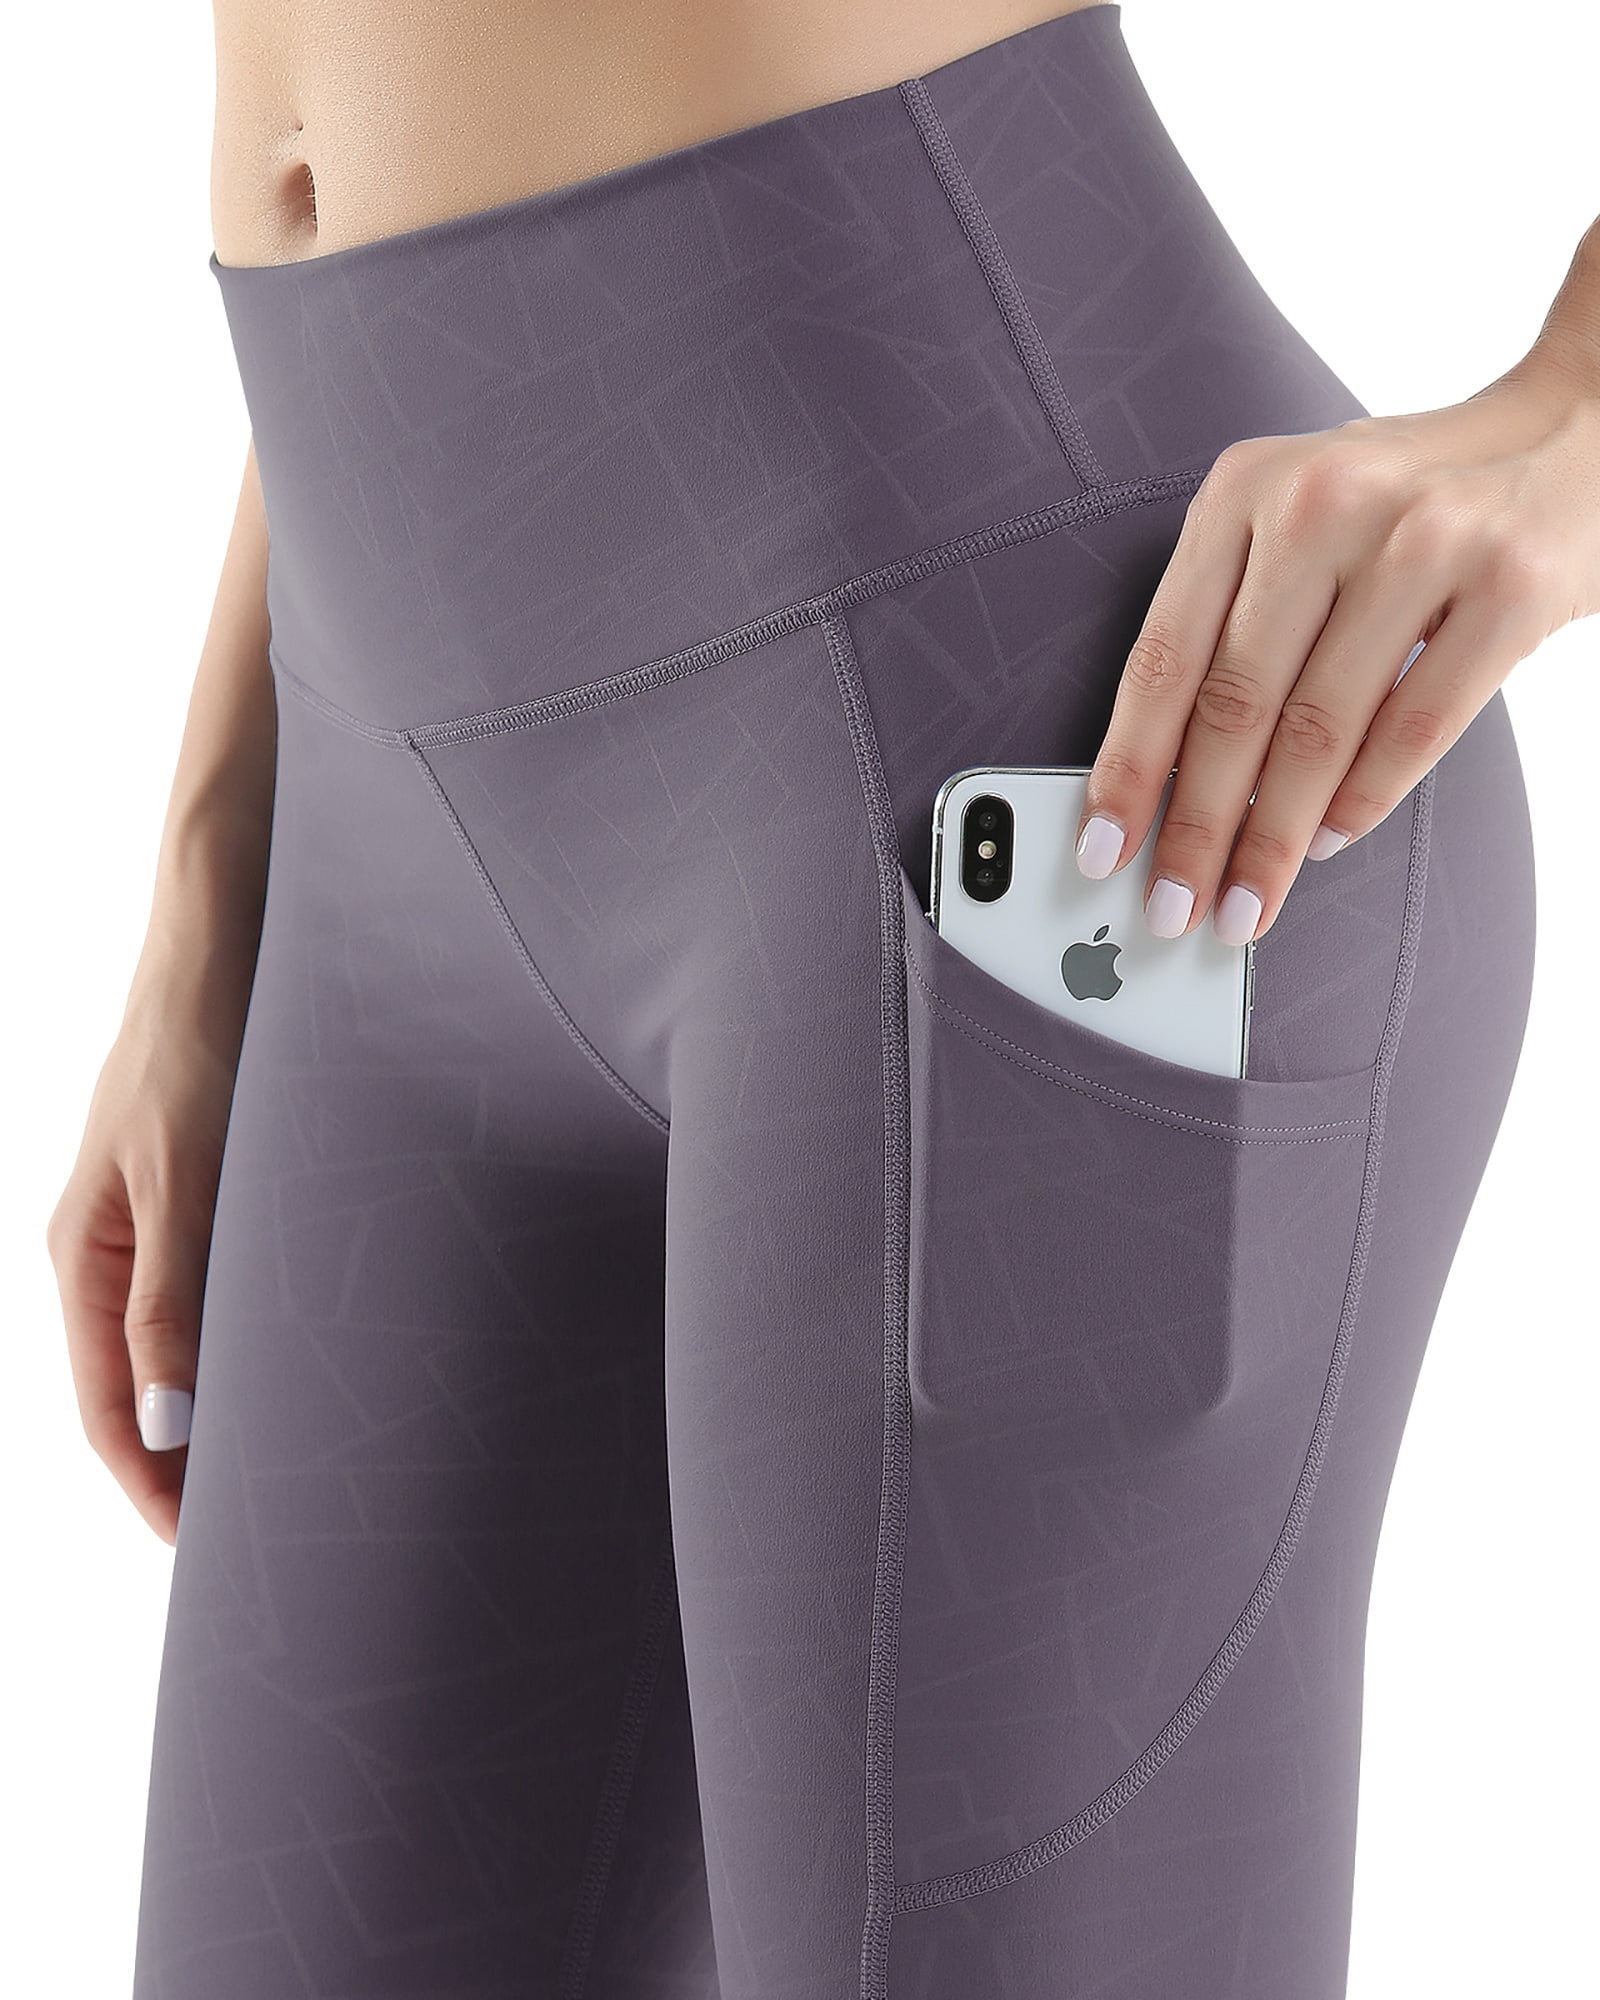 UUE 22Limpid Pattern Azure Leggings for women,7/8 leggings for women, High  Waist and Tummy control Leggings 